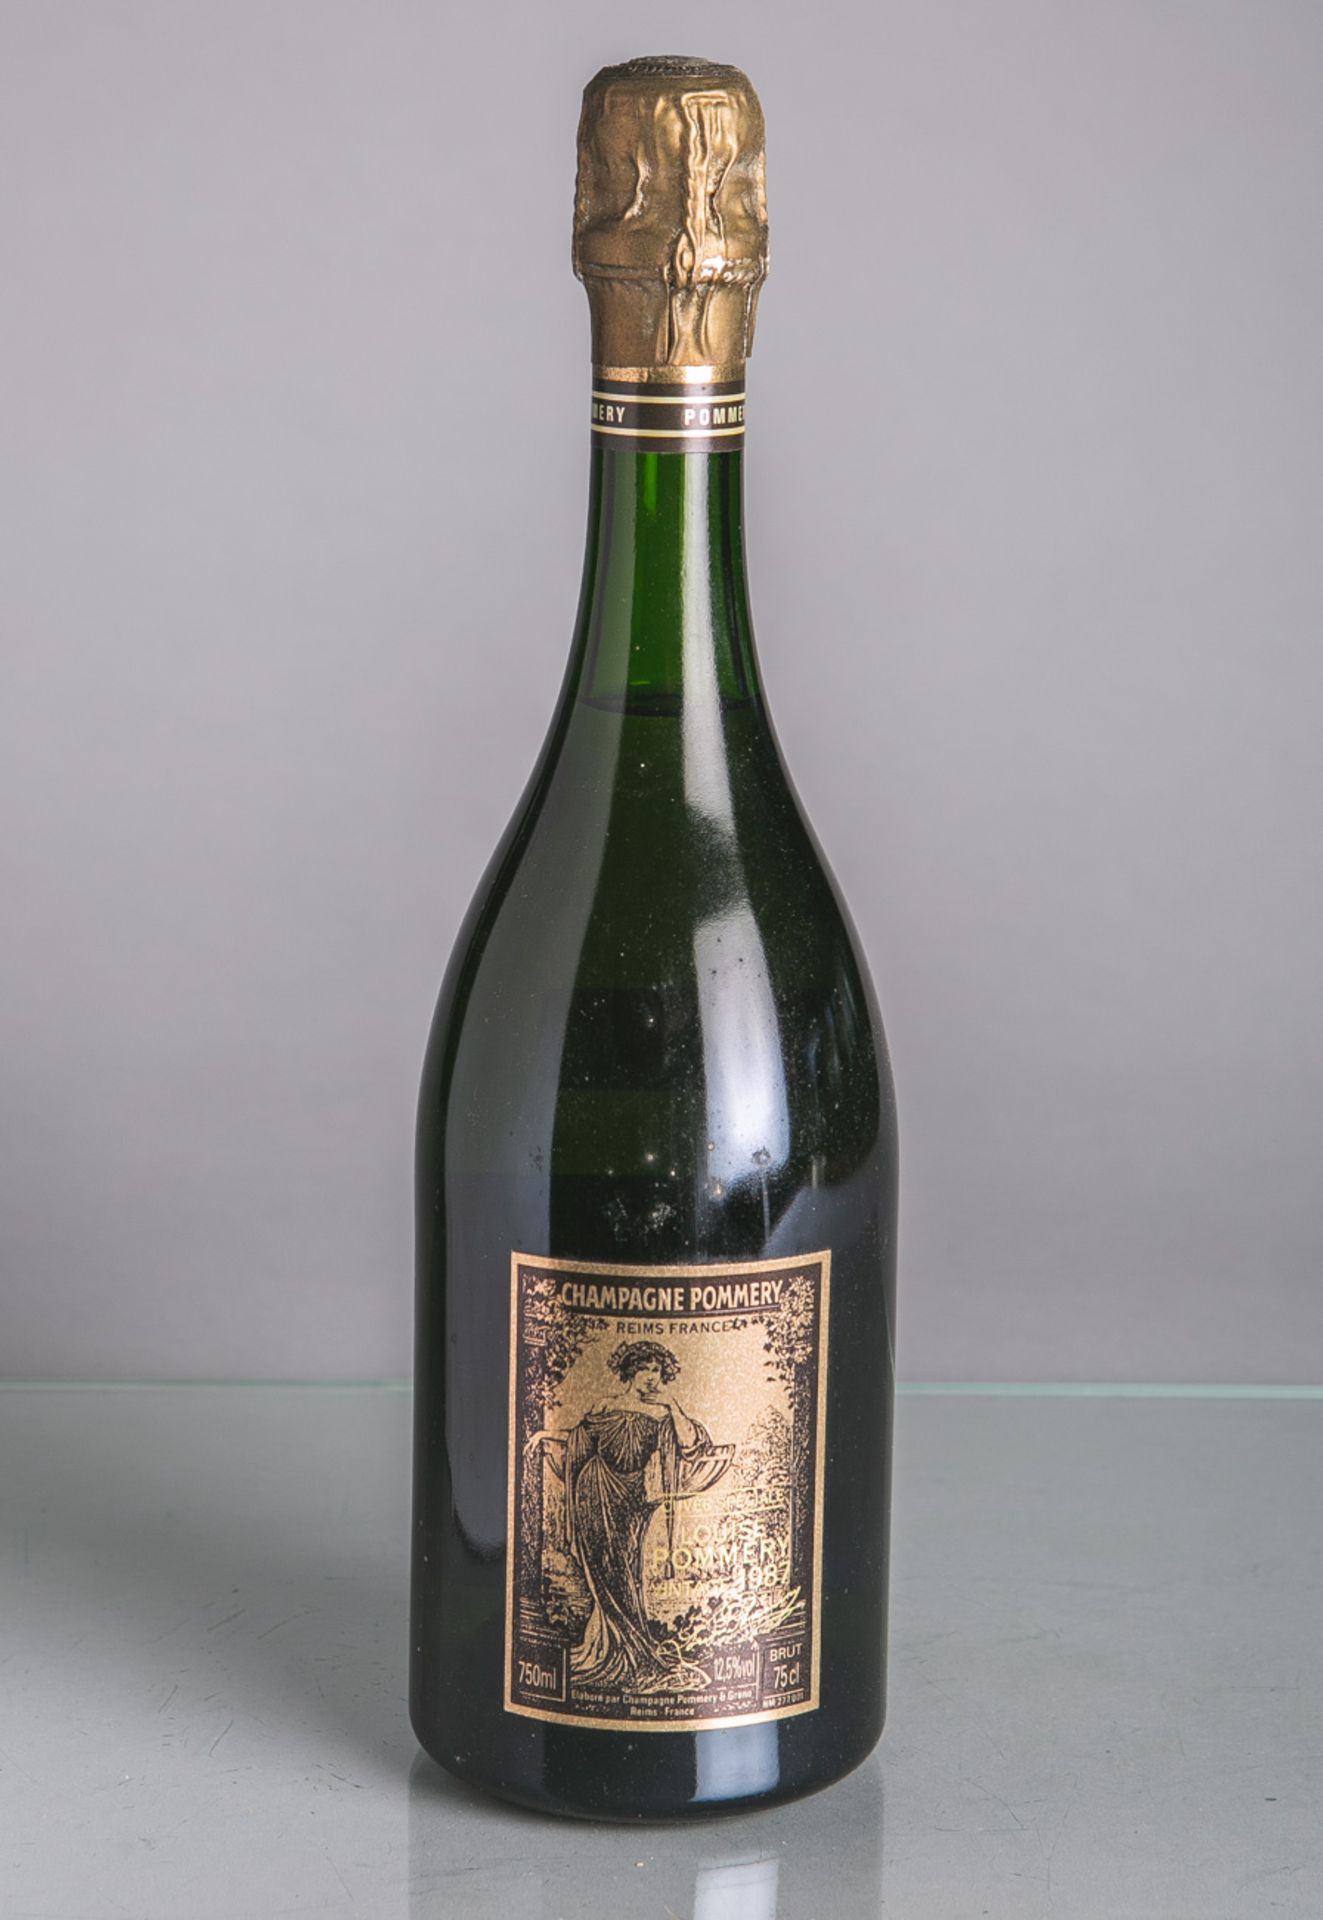 4 versch. Champagner-Flaschen, je 0,75 L, bestehend aus: 1x Pommery Louise (1988), 1x H.Bugatti